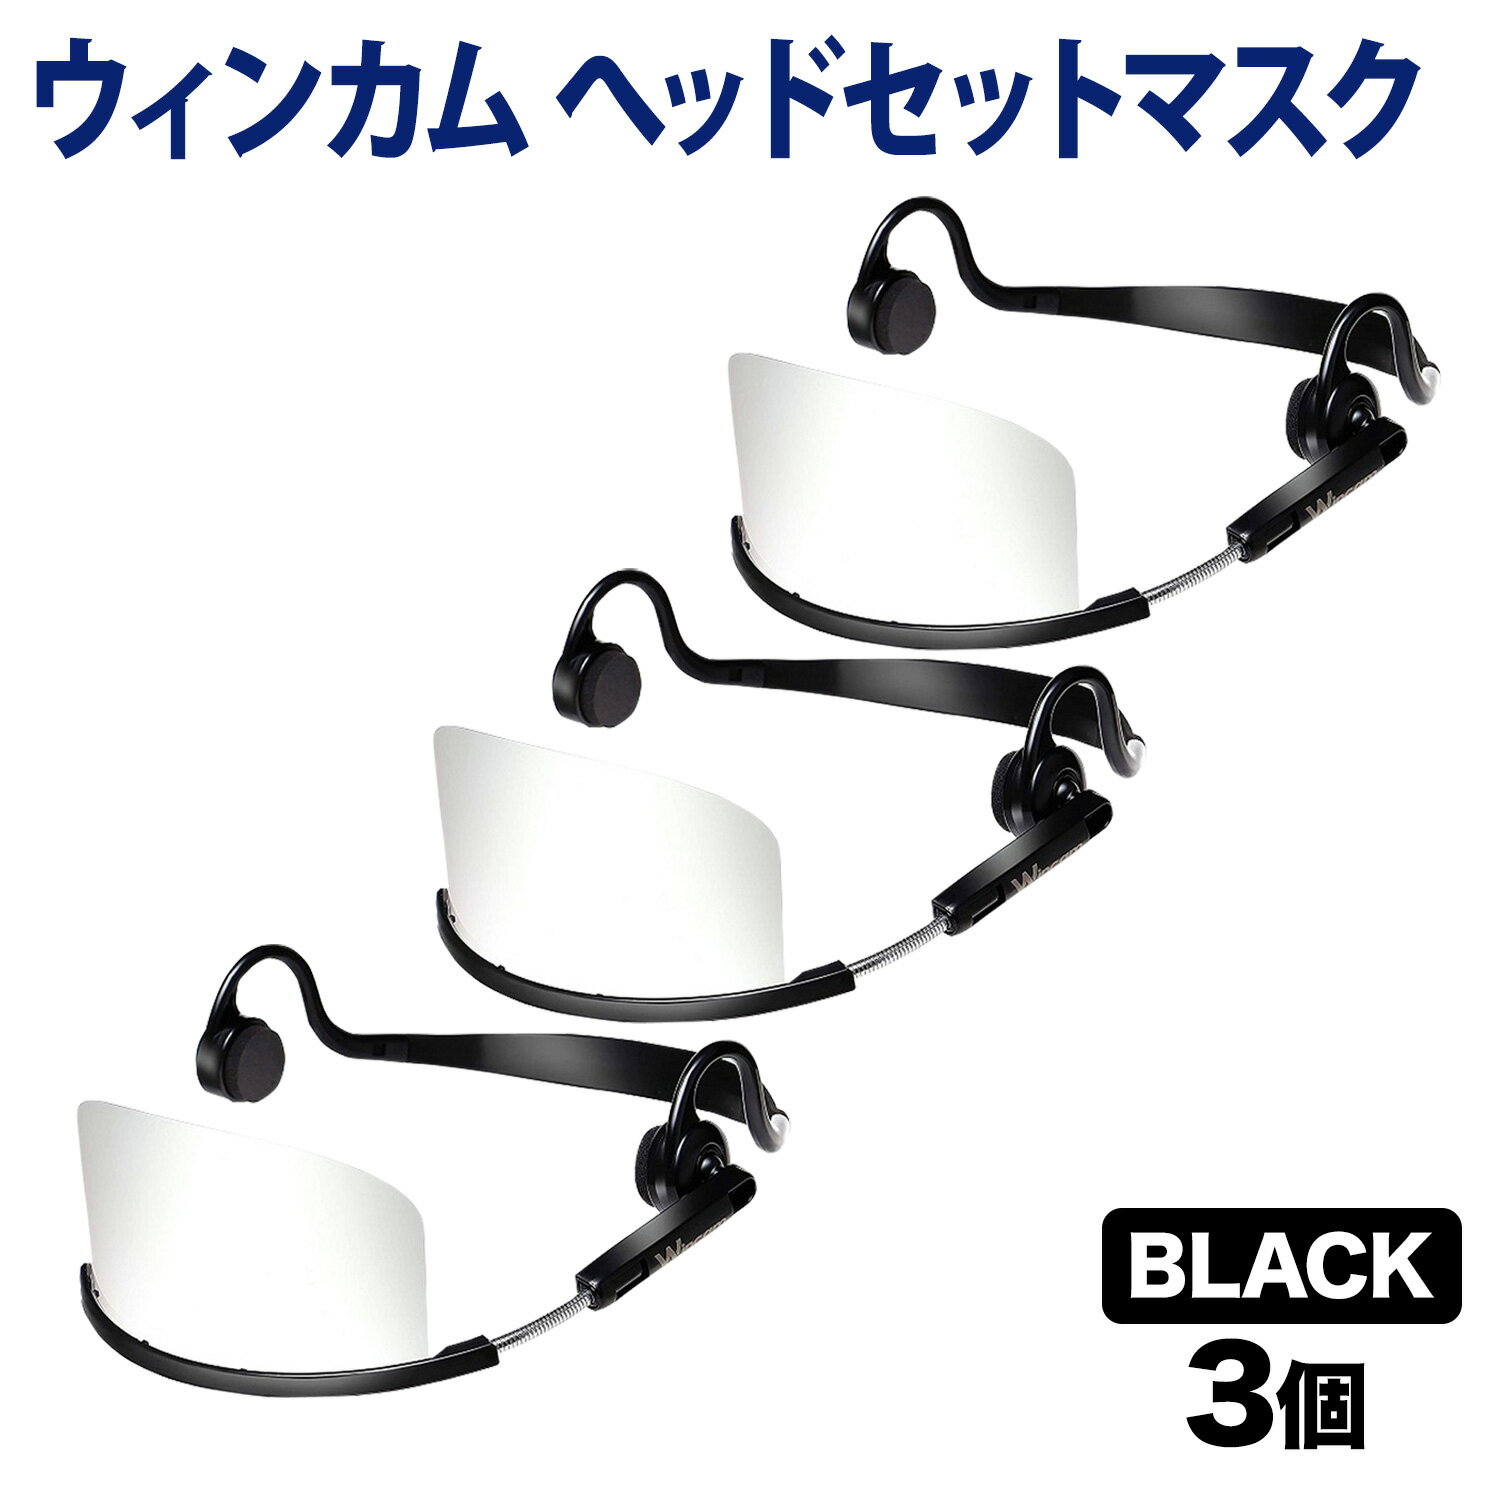 ウィンカム 透明衛生マスク/ヘッドセットマスク W-HSM-3B (sb) ブラック 3個セット